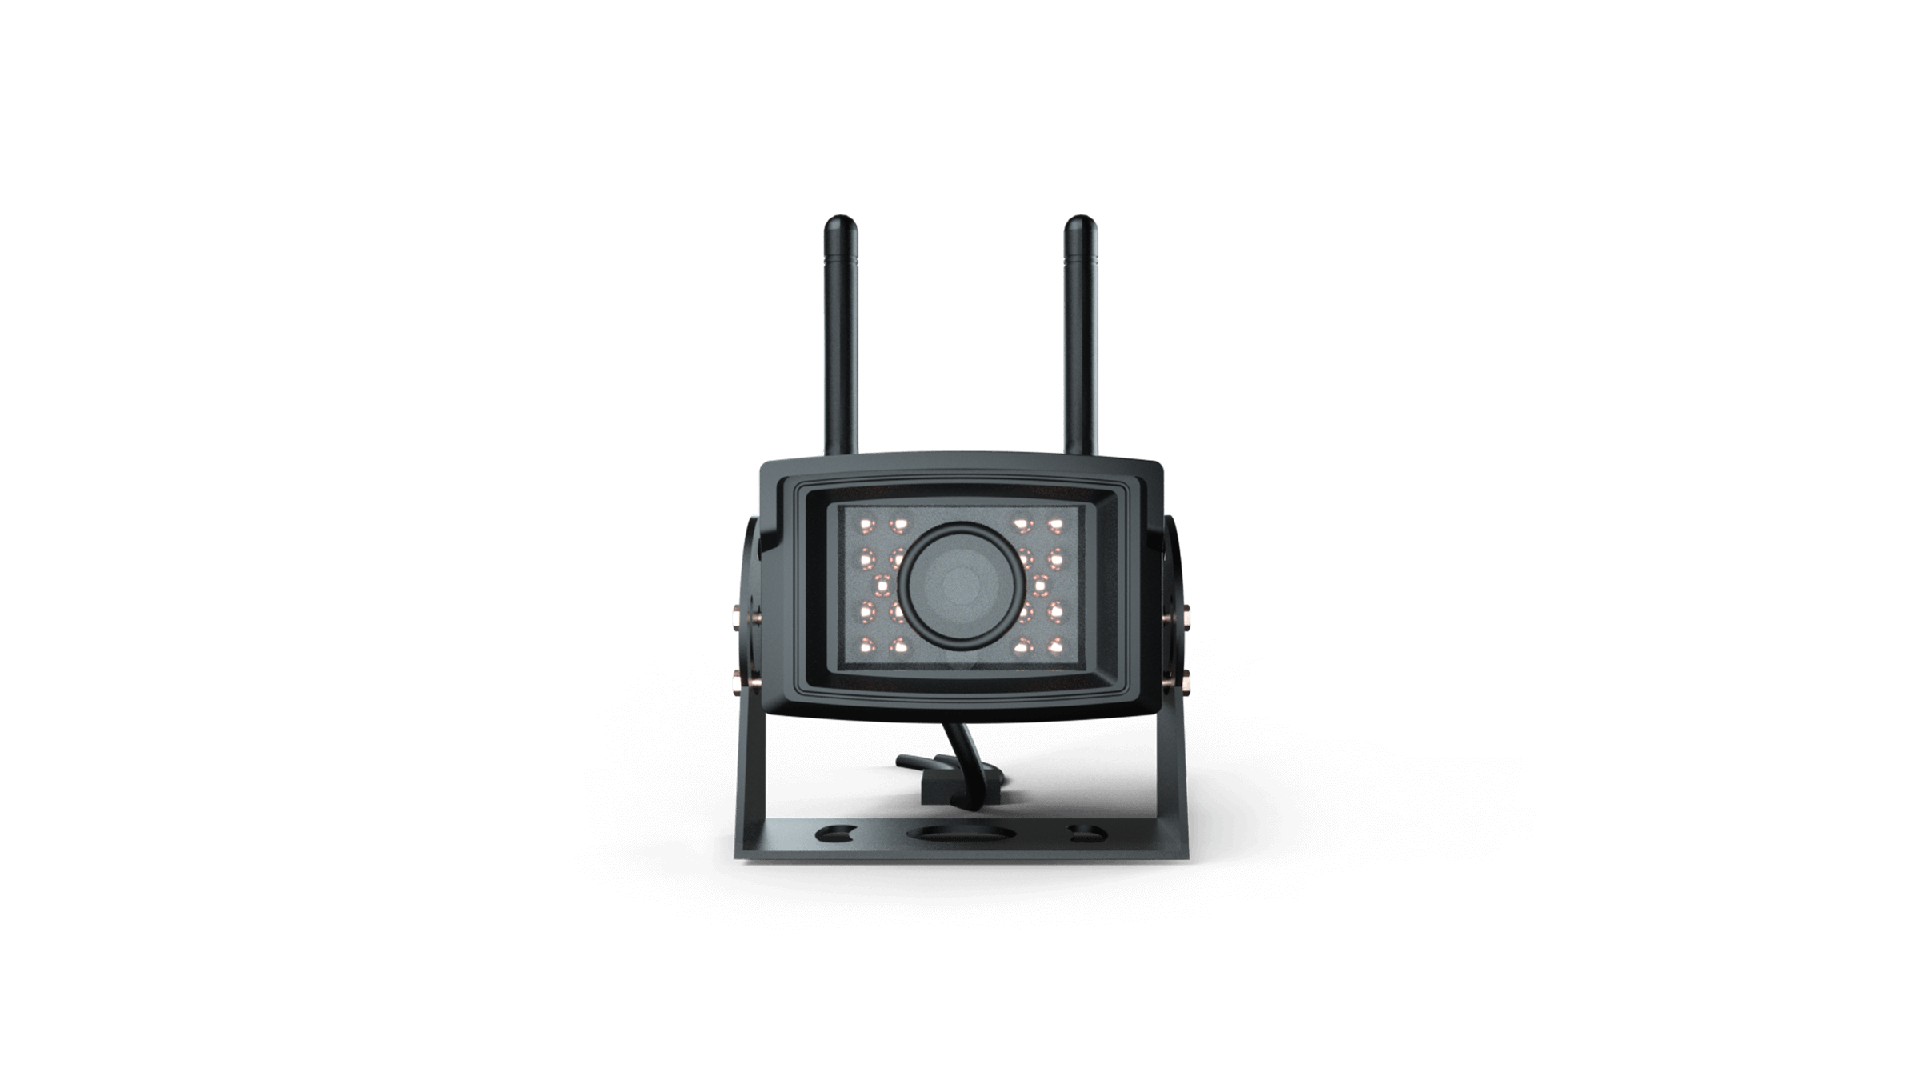 Envoie des images en temps réel (1080P) au terminal de contrôle à une distance allant jusqu'à 20 mètres, même la nuit (vision nocturne infrarouge activée).